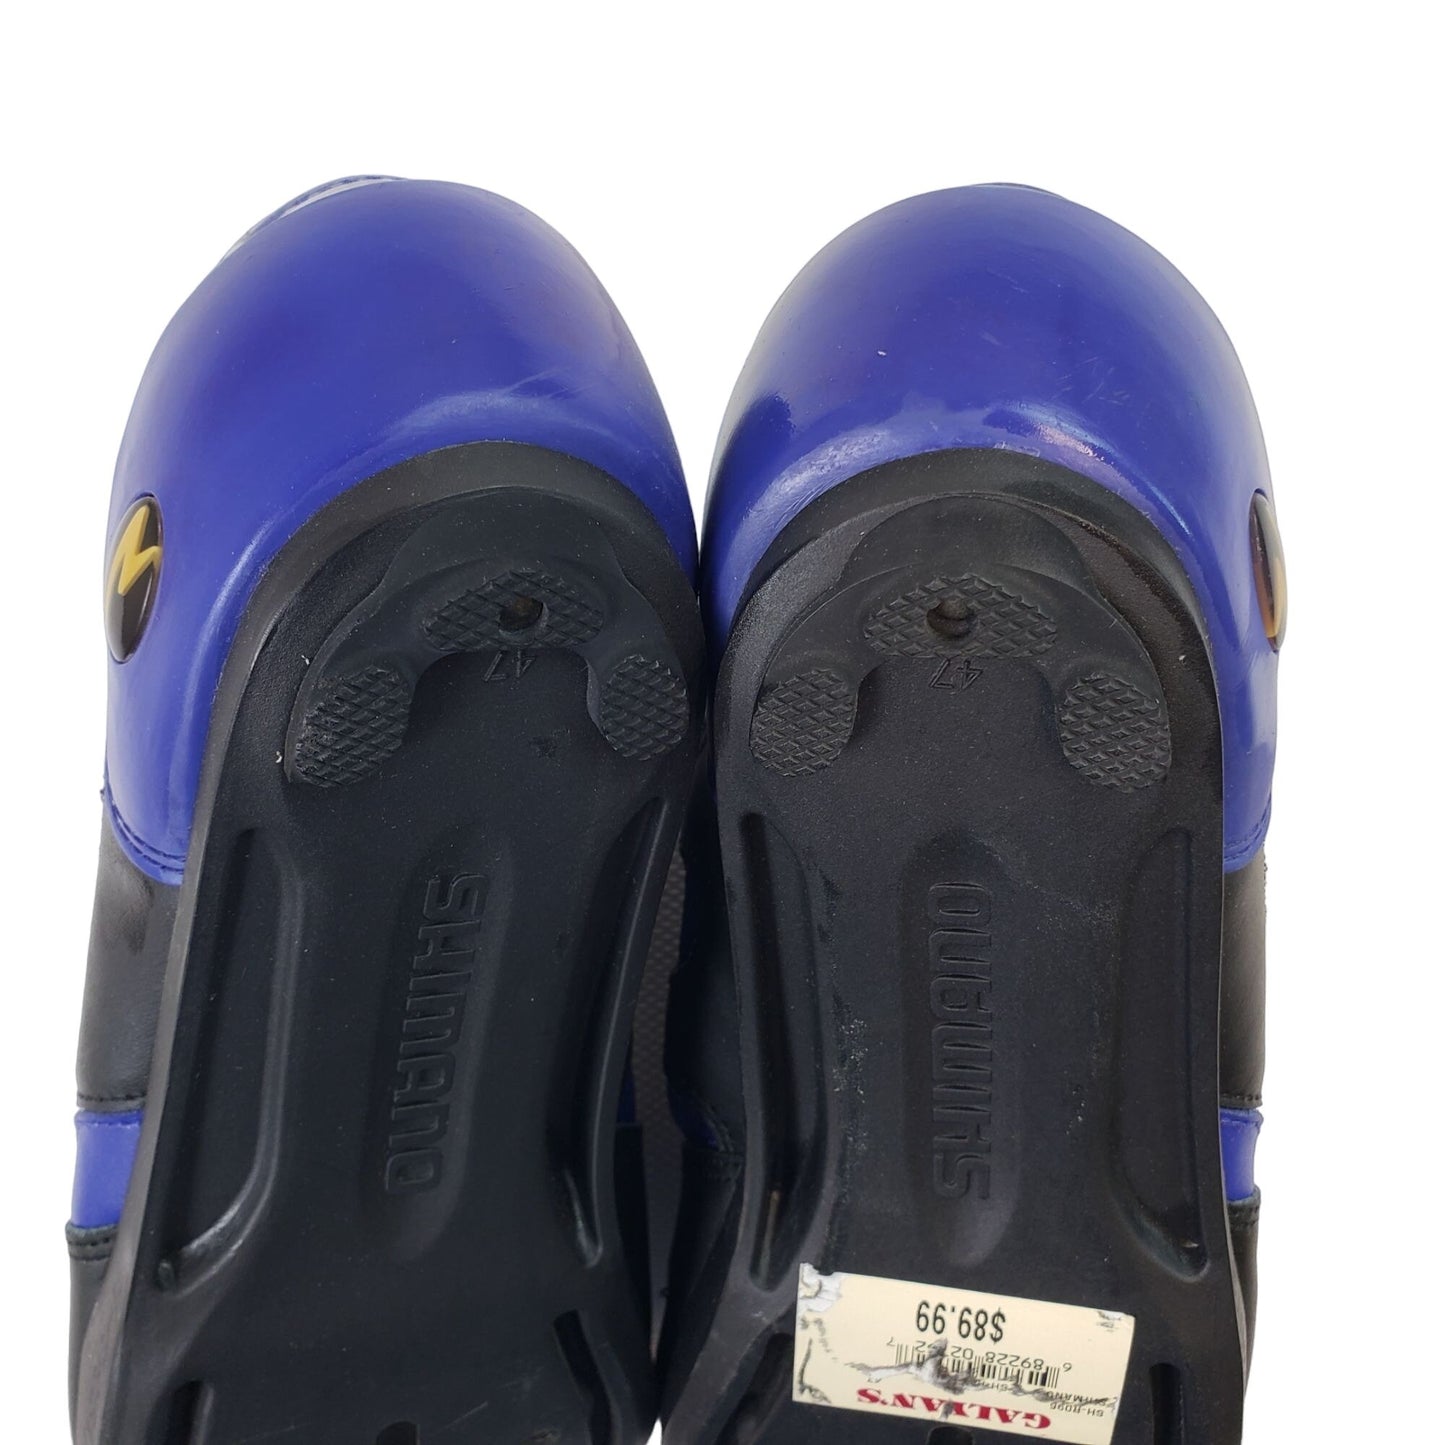 NIB/NWT Shimano SH-R096B Road Cycling Shoes Black/Blue Size 47/12.5 US